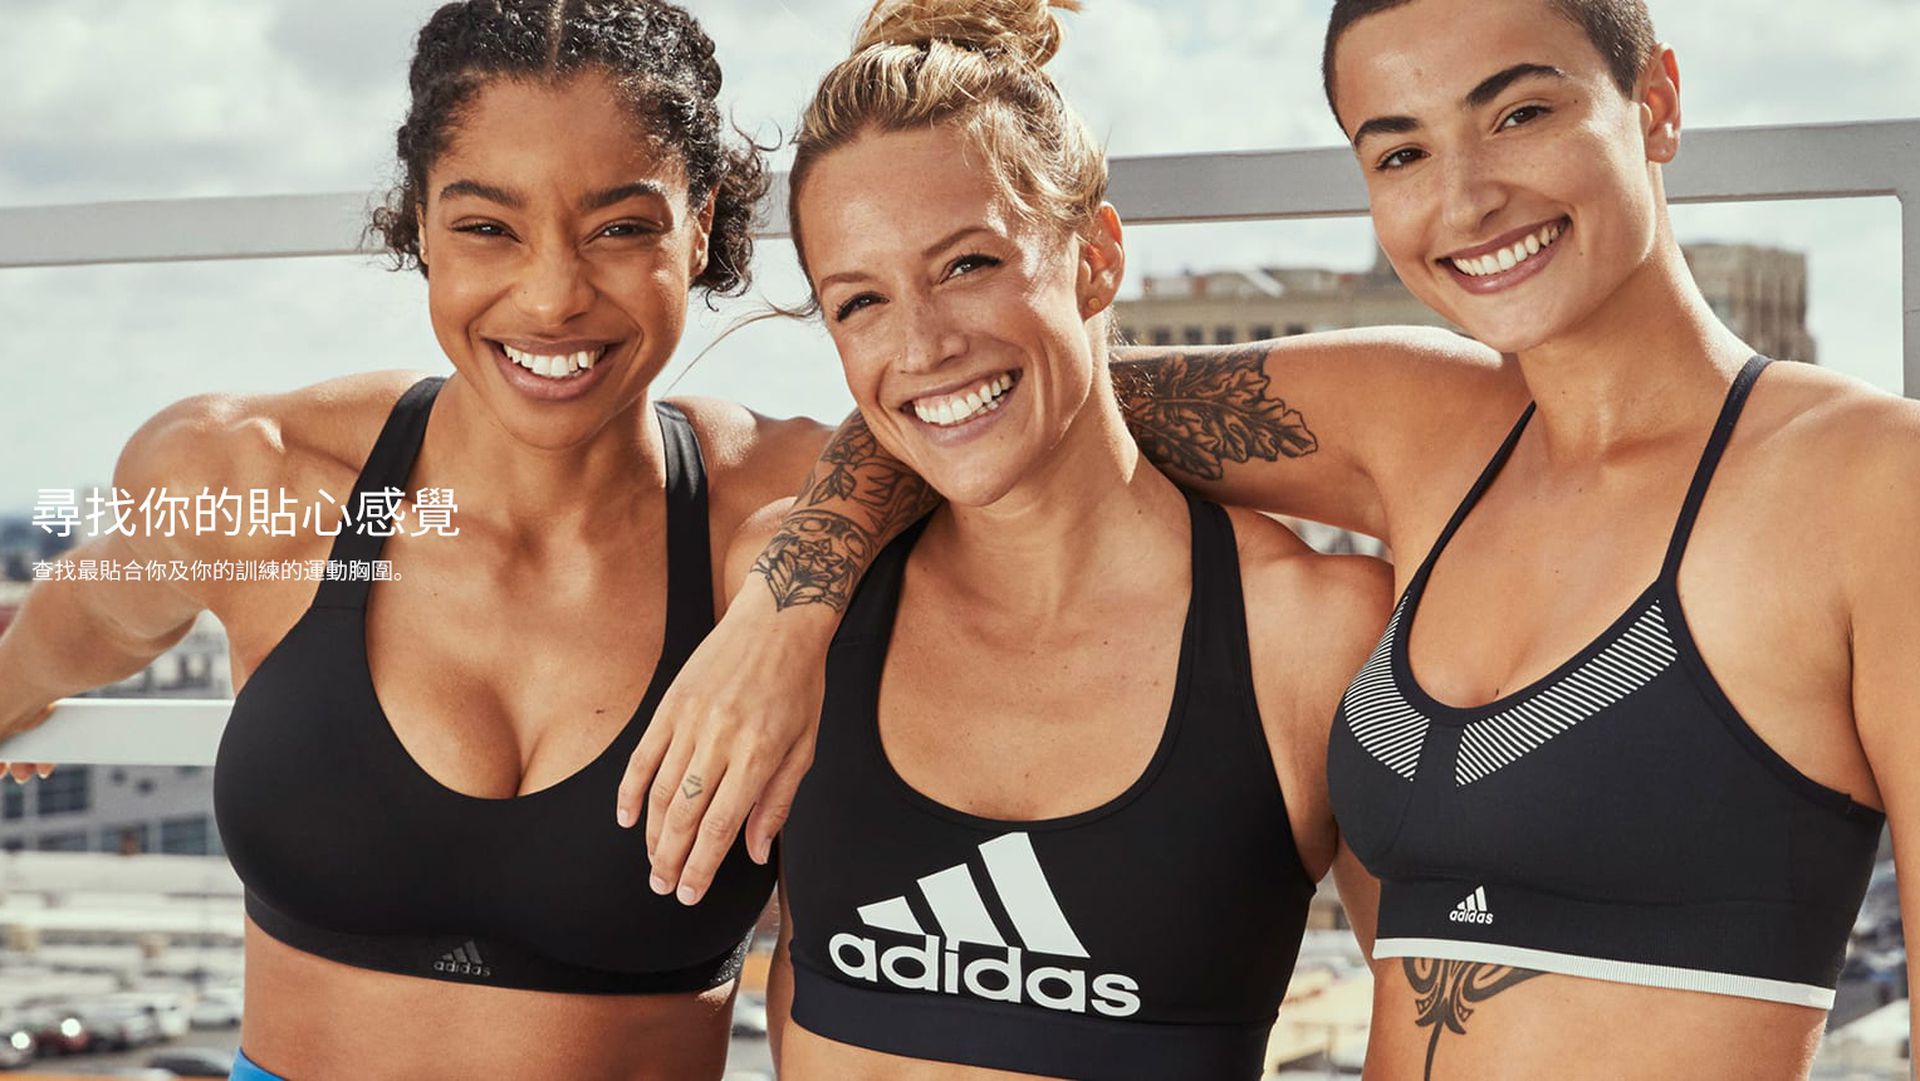 Adidas運動胸圍廣告英國頒禁　稱涉女性裸胸　須斟酌定位以免冒犯